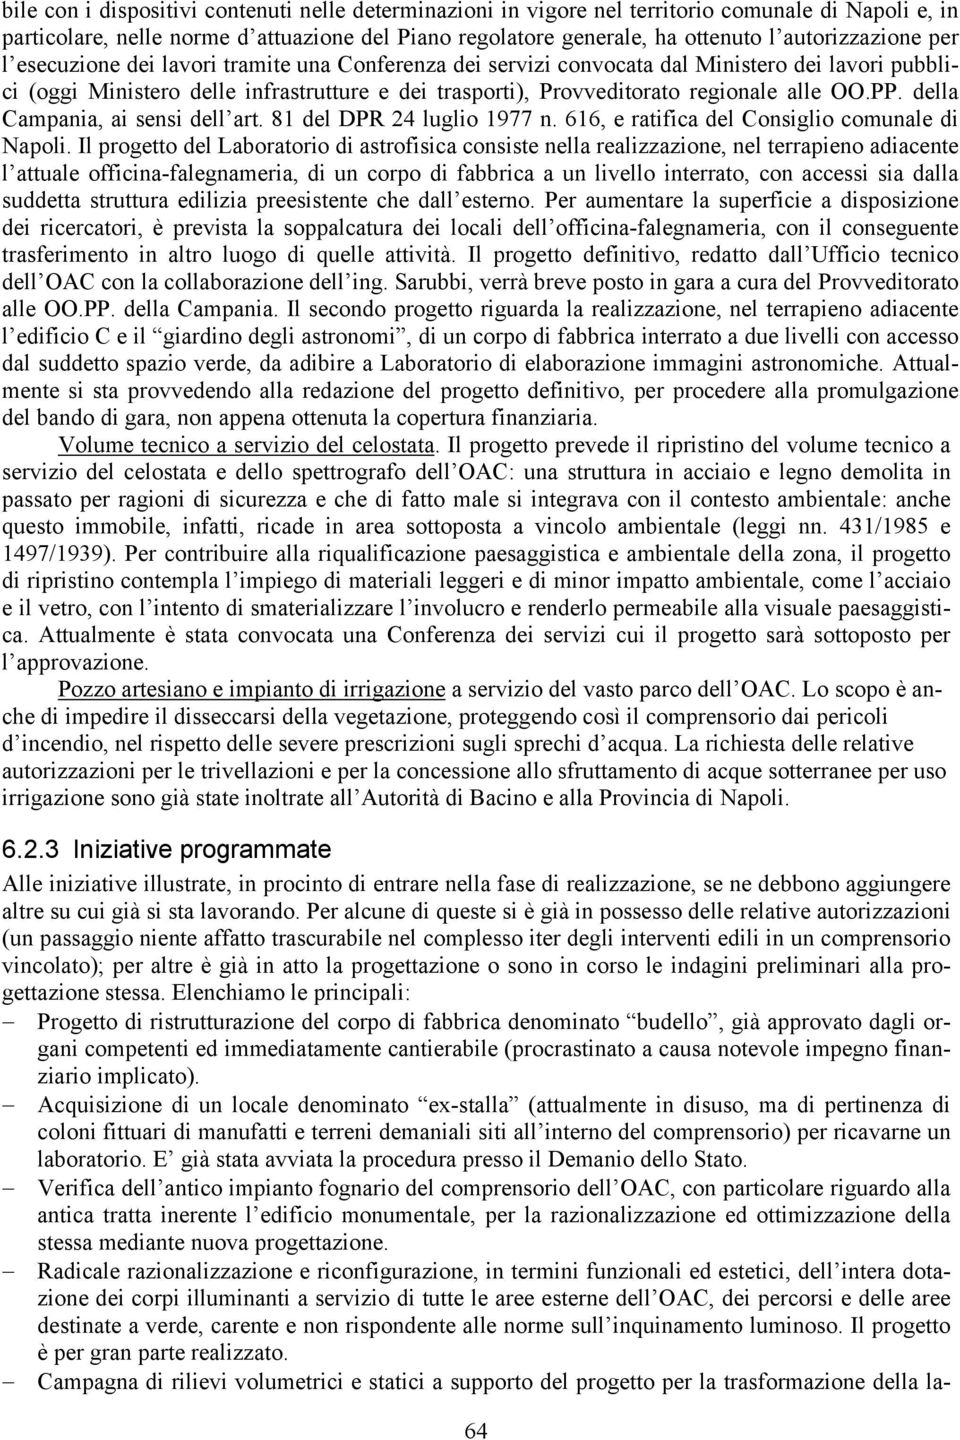 regionale alle OO.PP. della Campania, ai sensi dell art. 81 del DPR 24 luglio 1977 n. 616, e ratifica del Consiglio comunale di Napoli.